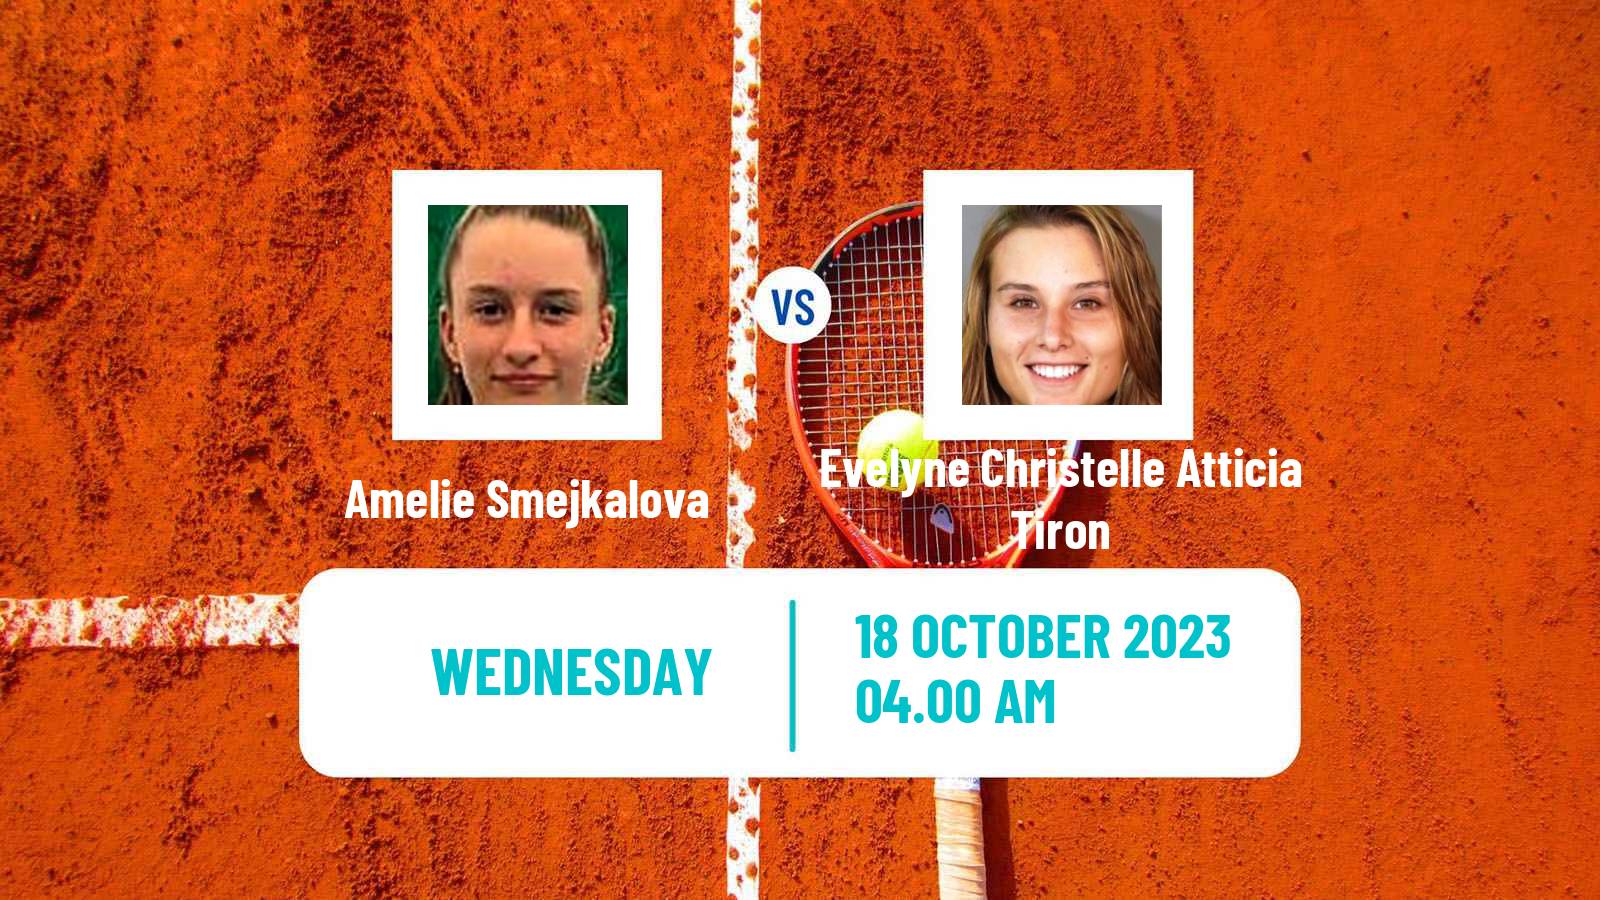 Tennis ITF W15 Heraklion 3 Women Amelie Smejkalova - Evelyne Christelle Atticia Tiron